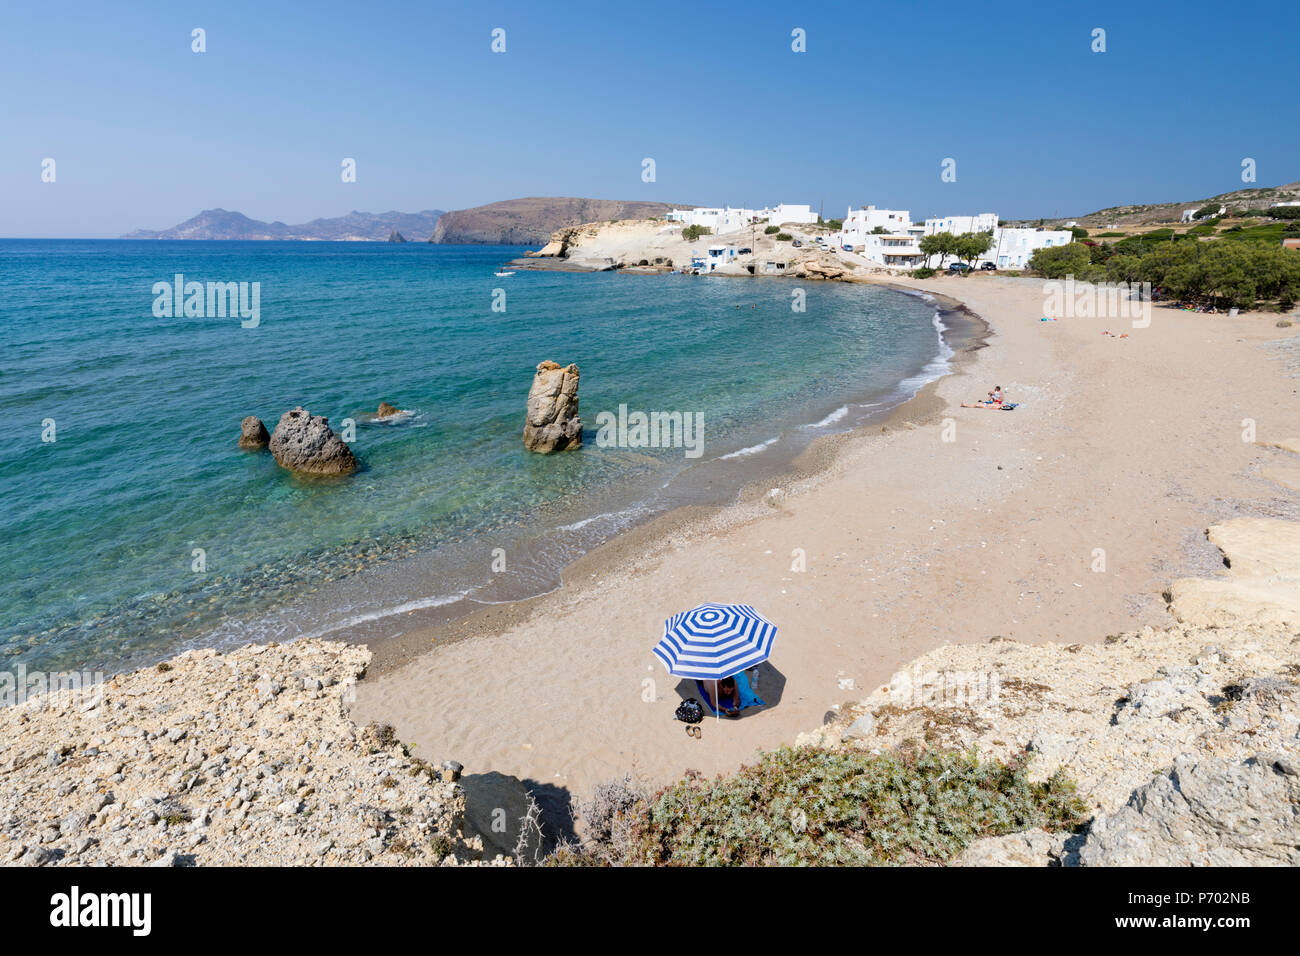 Plage de Pachena avec eau turquoise, Milos, Cyclades, Pachena, sur la mer Egée, les îles grecques, Grèce, Europe Banque D'Images